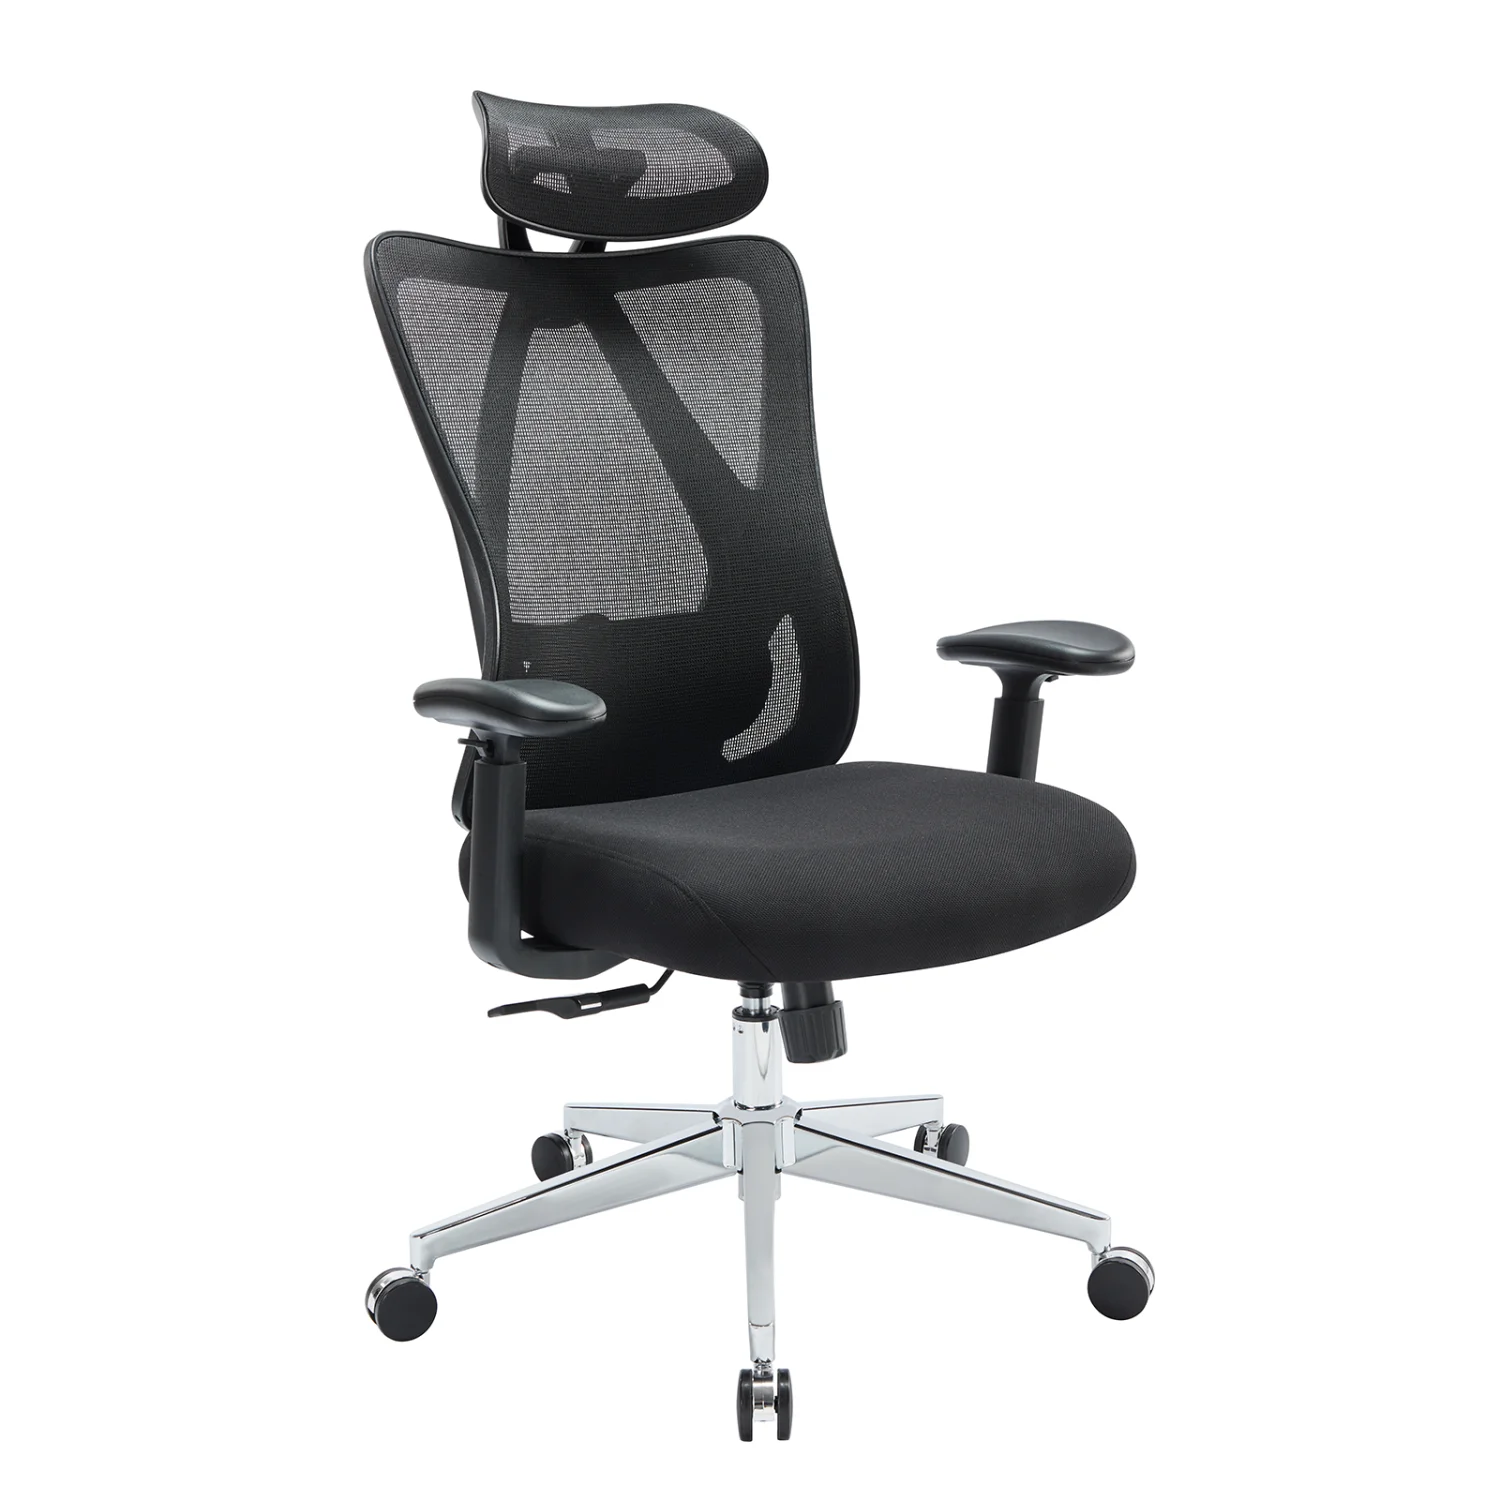 

Эргономичный регулируемый подголовник с высокой спинкой и сетчатый офисный стул с подголовником и талией-удобный, поддерживающий и стильный Optio